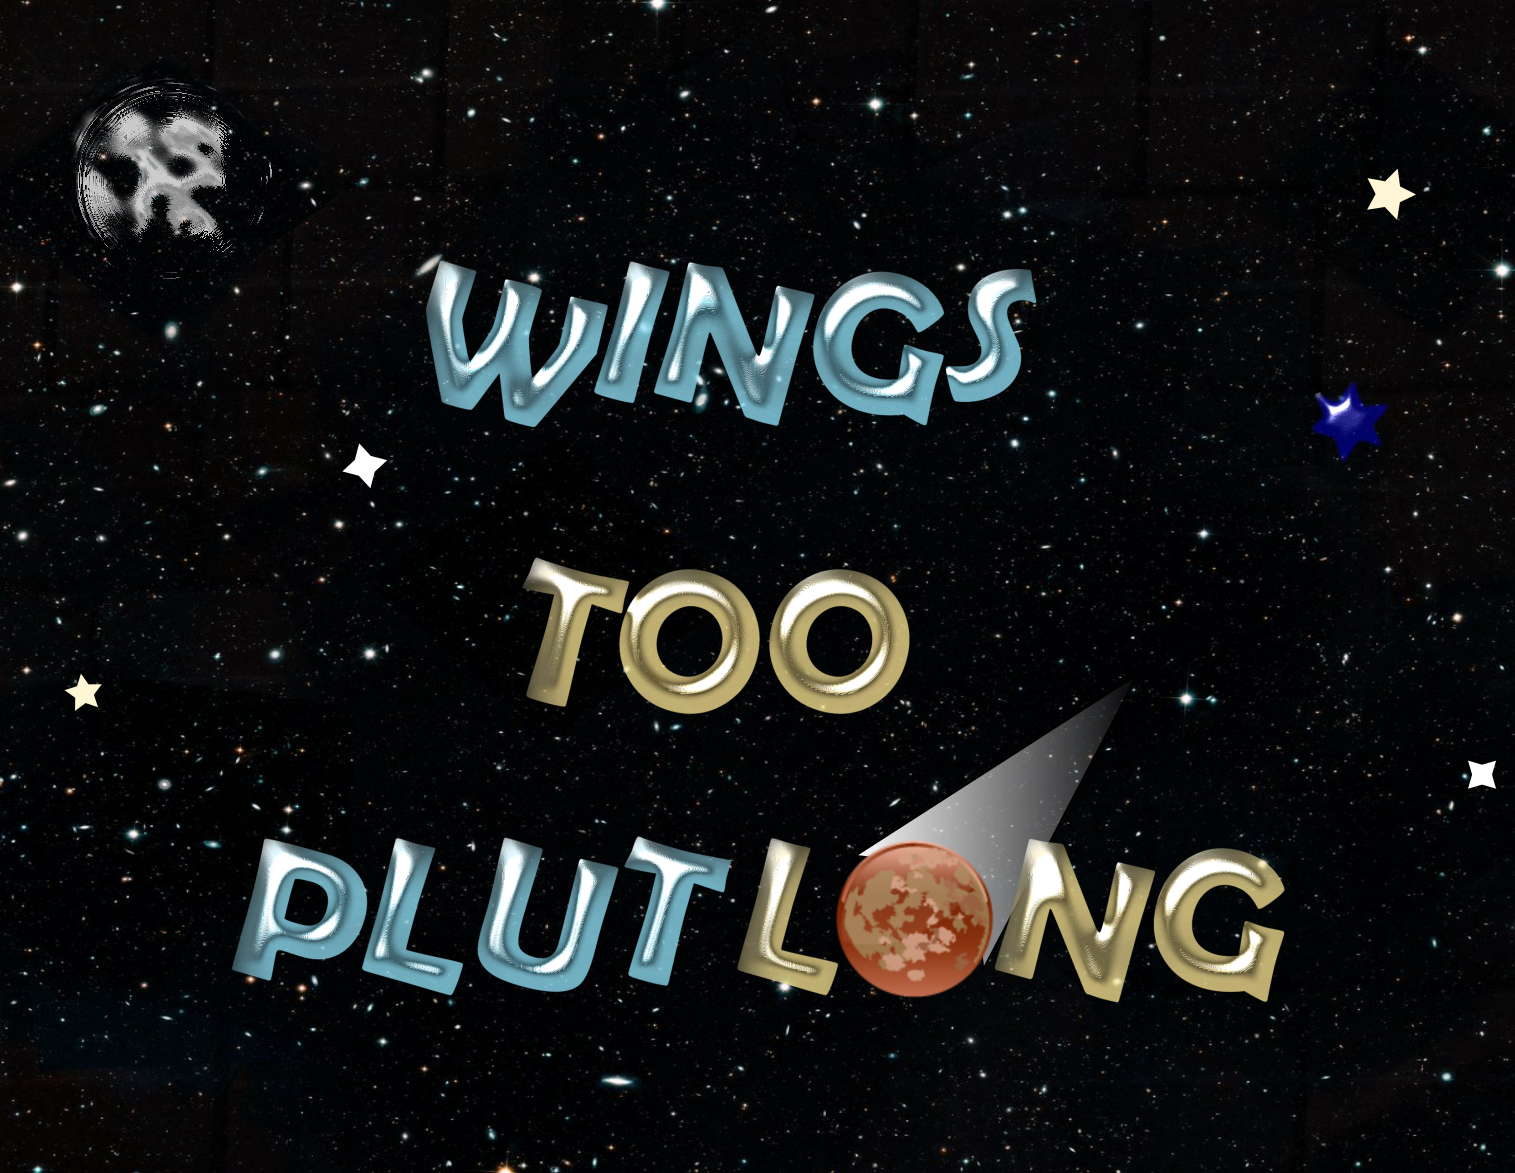 Wings Too PlutLong